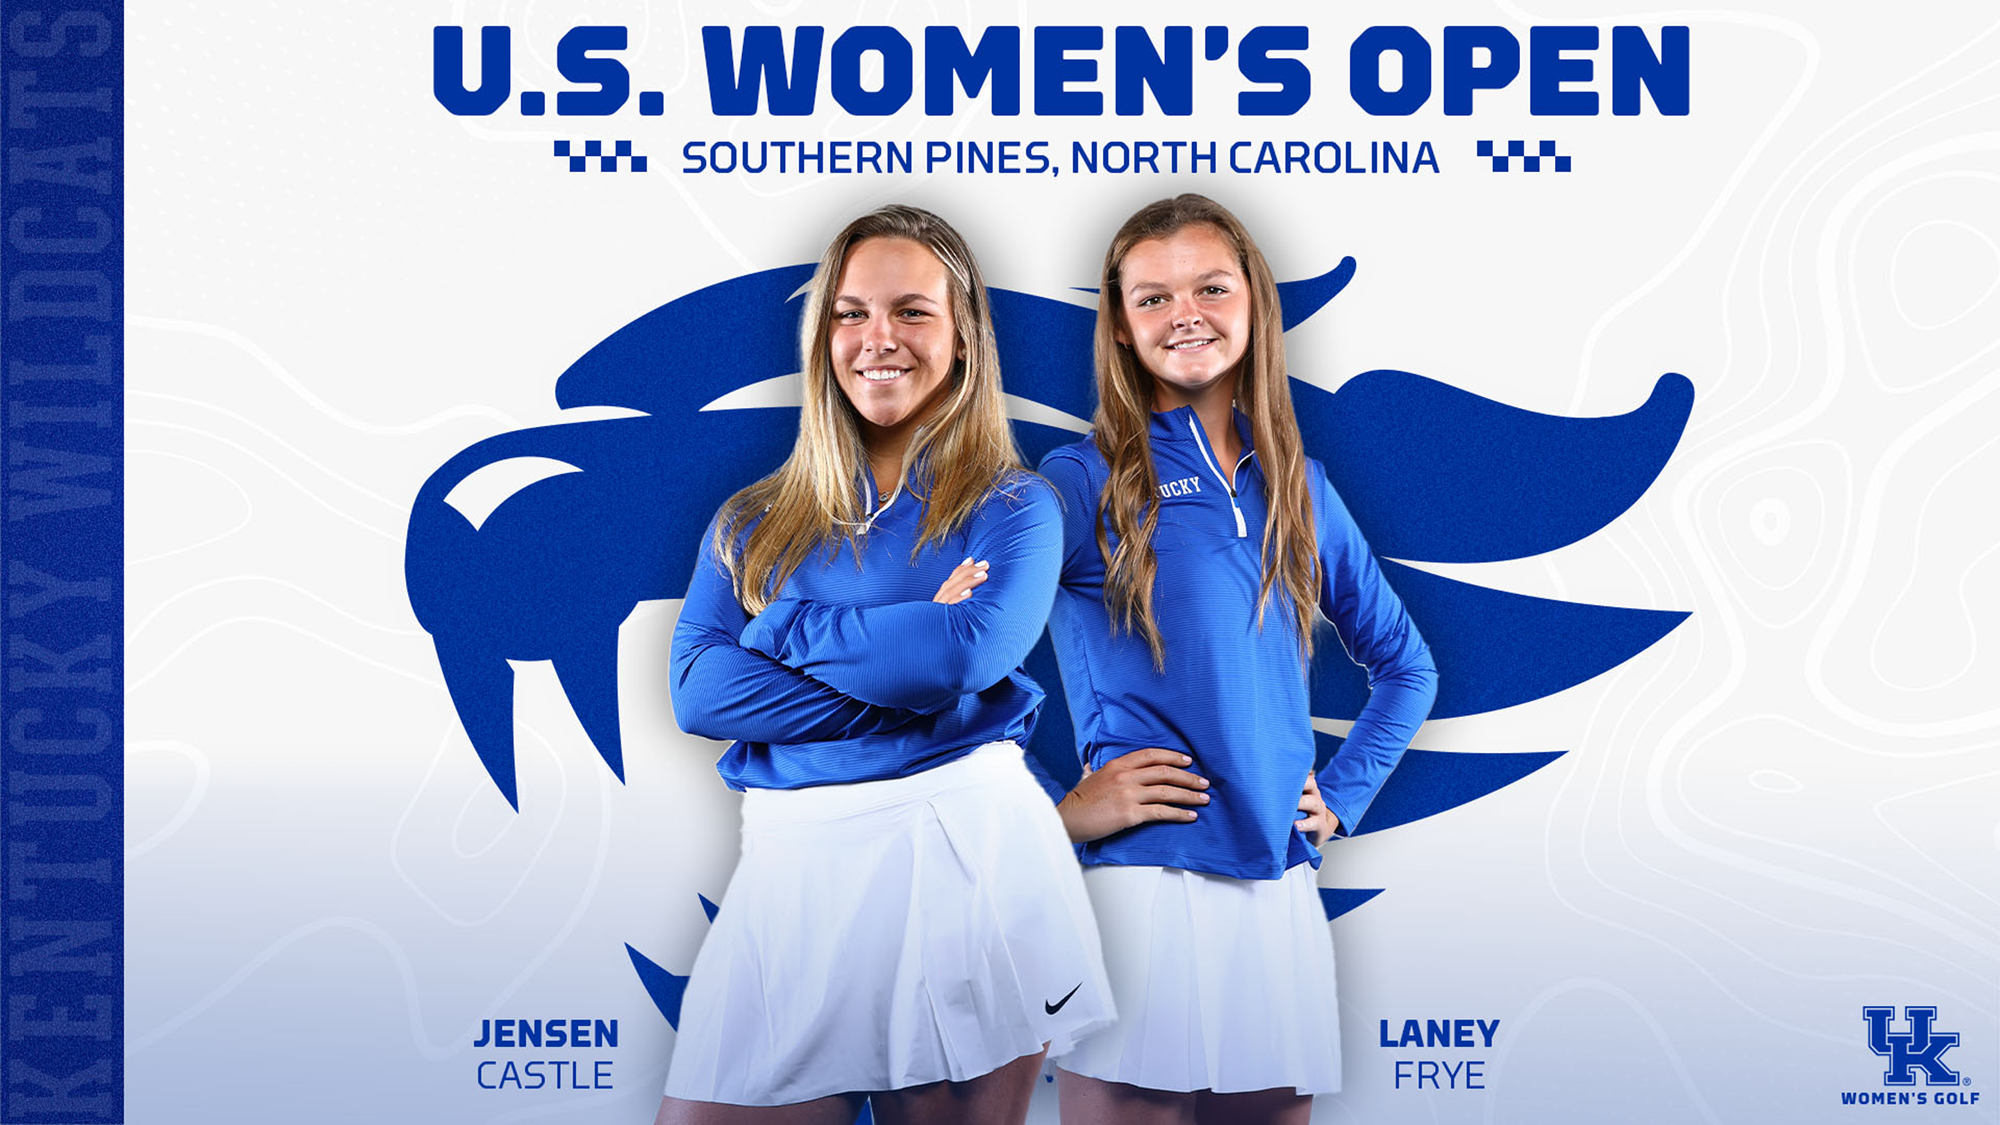 Jensen Castle and Laney Frye to Take on U.S. Women’s Open Tomorrow